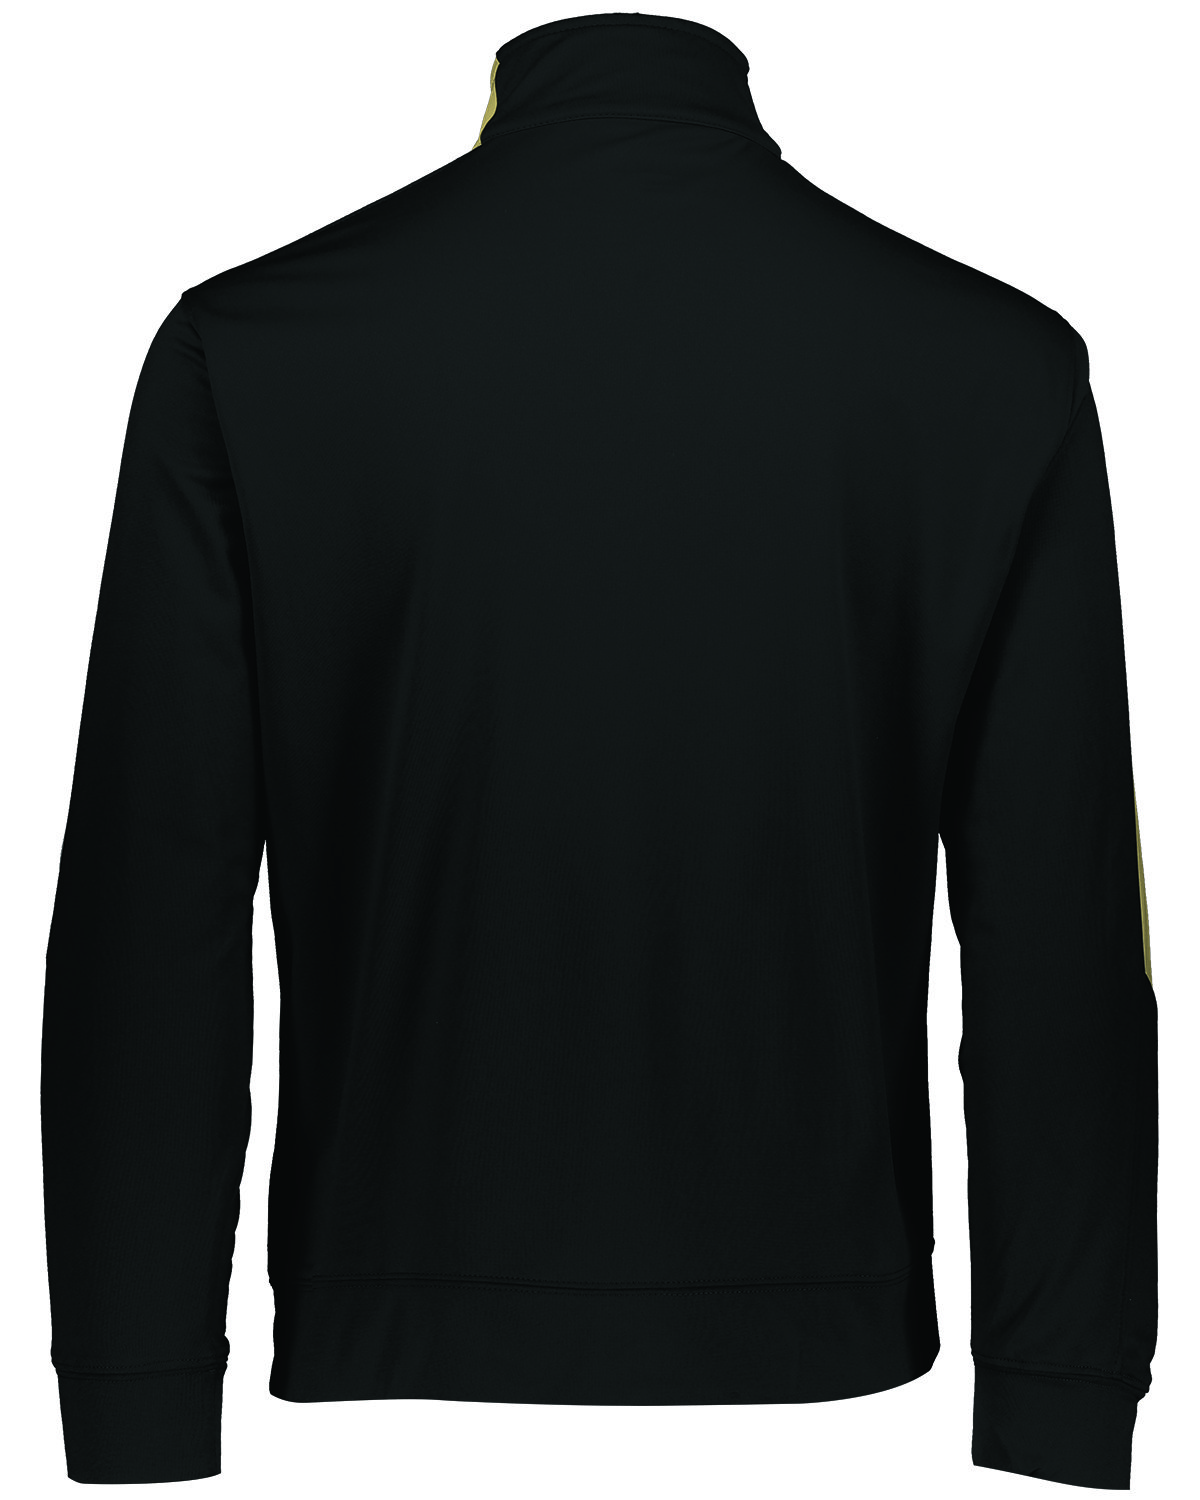 Augusta Sportswear Unisex 2.0 Medalist Jacket | alphabroder